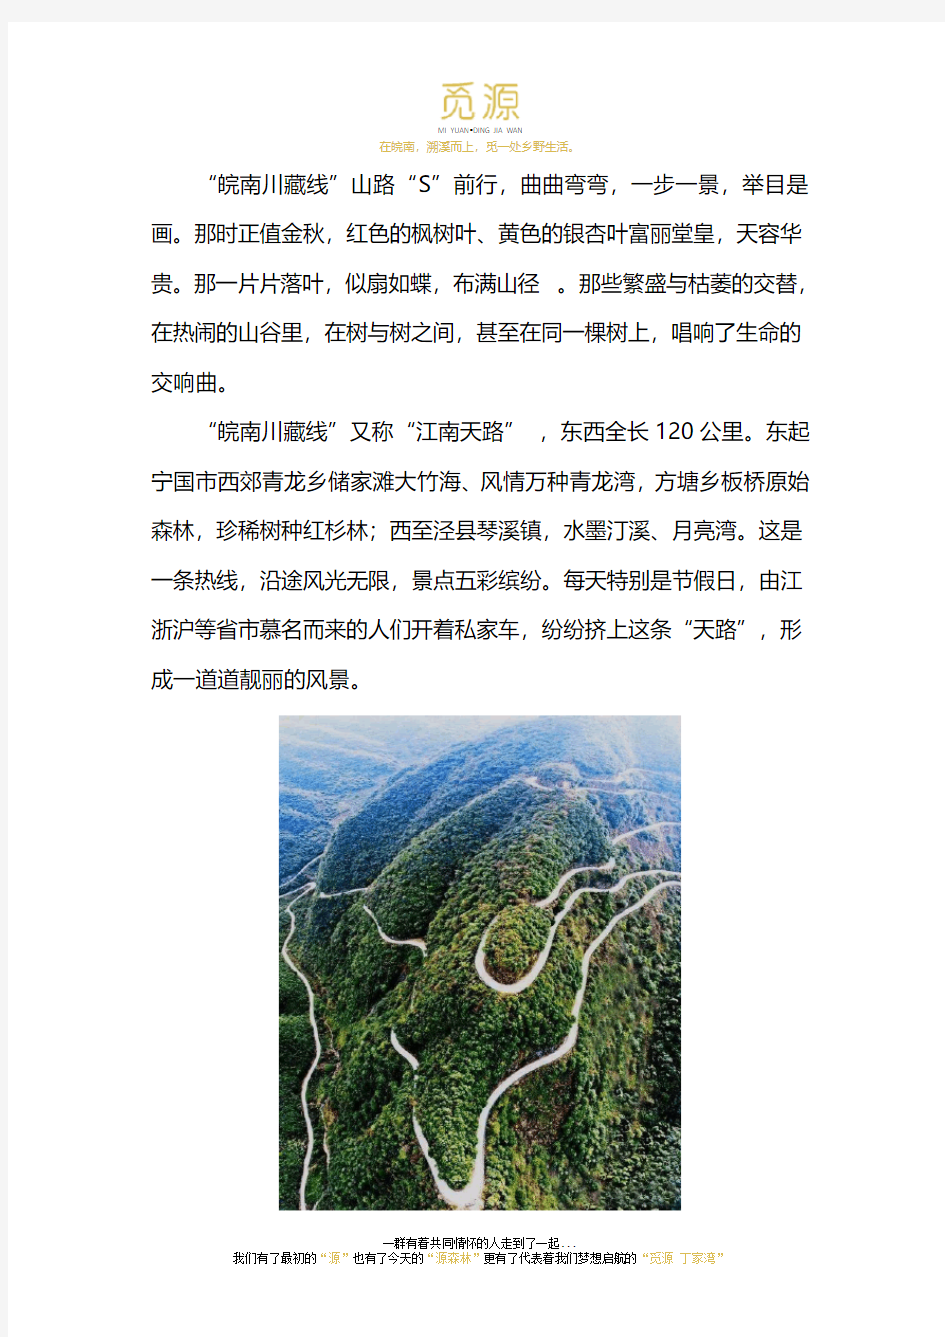 徽州马头墙是皖南川藏线最好的风景